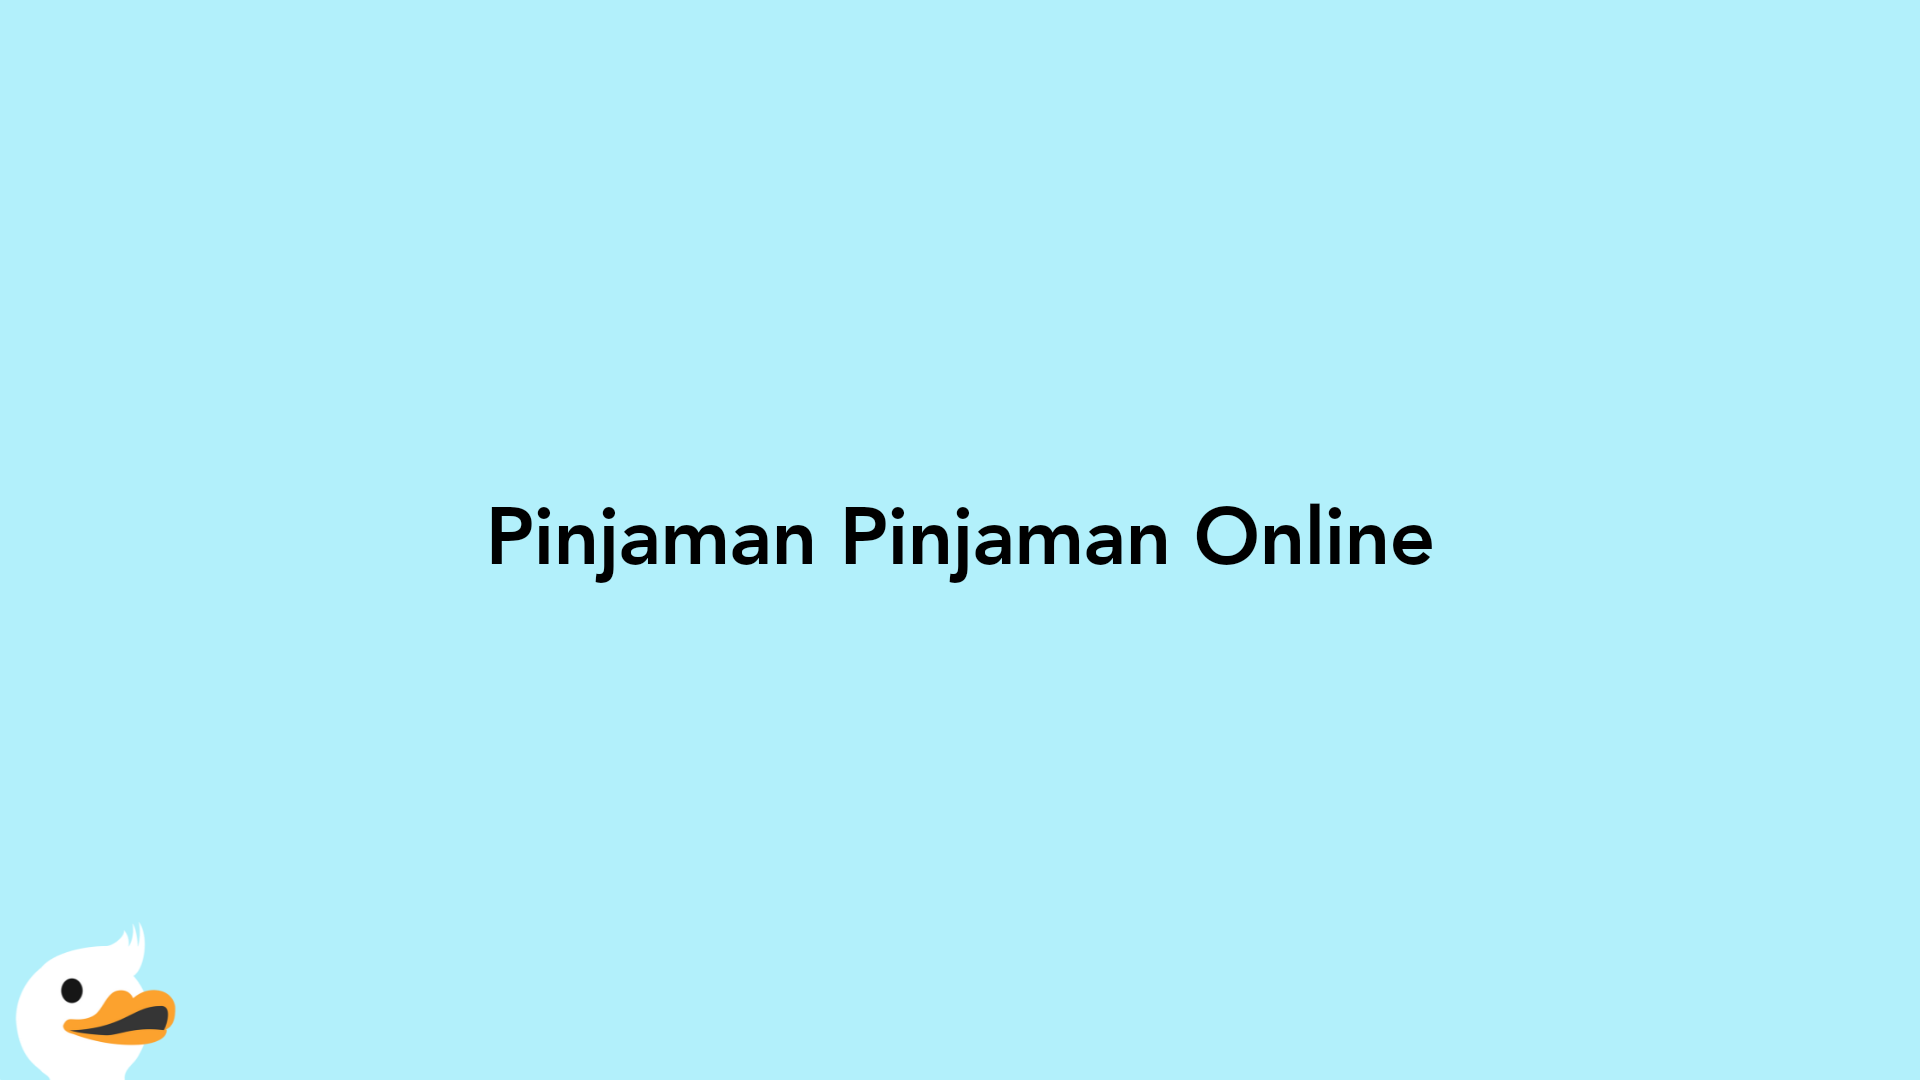 Pinjaman Pinjaman Online